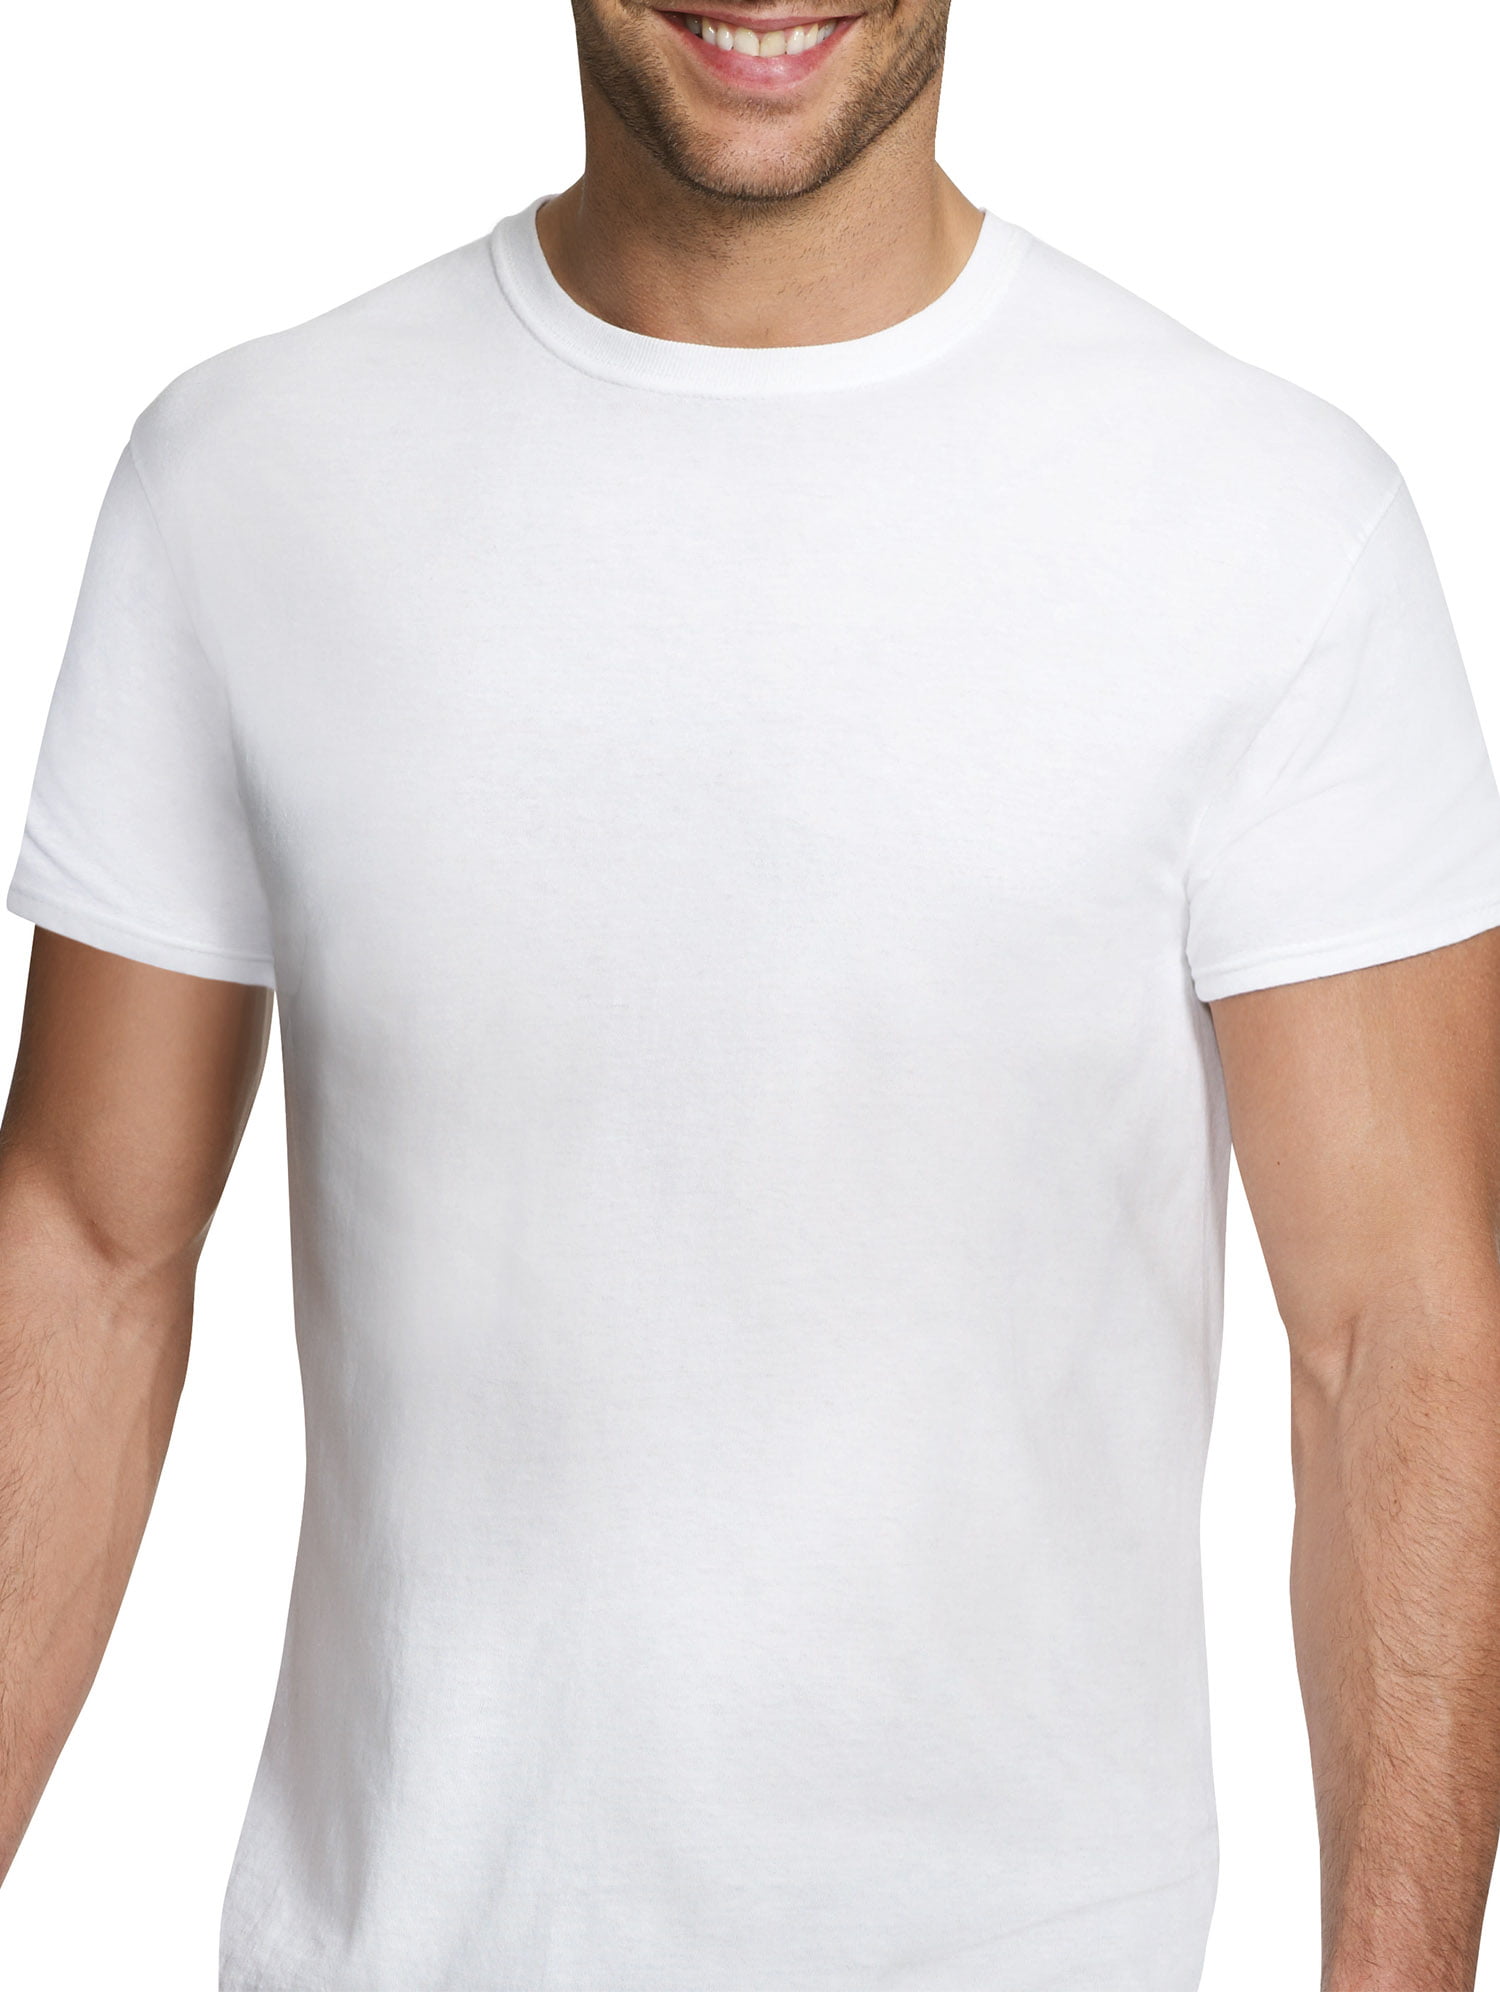 hanes plain white t shirts